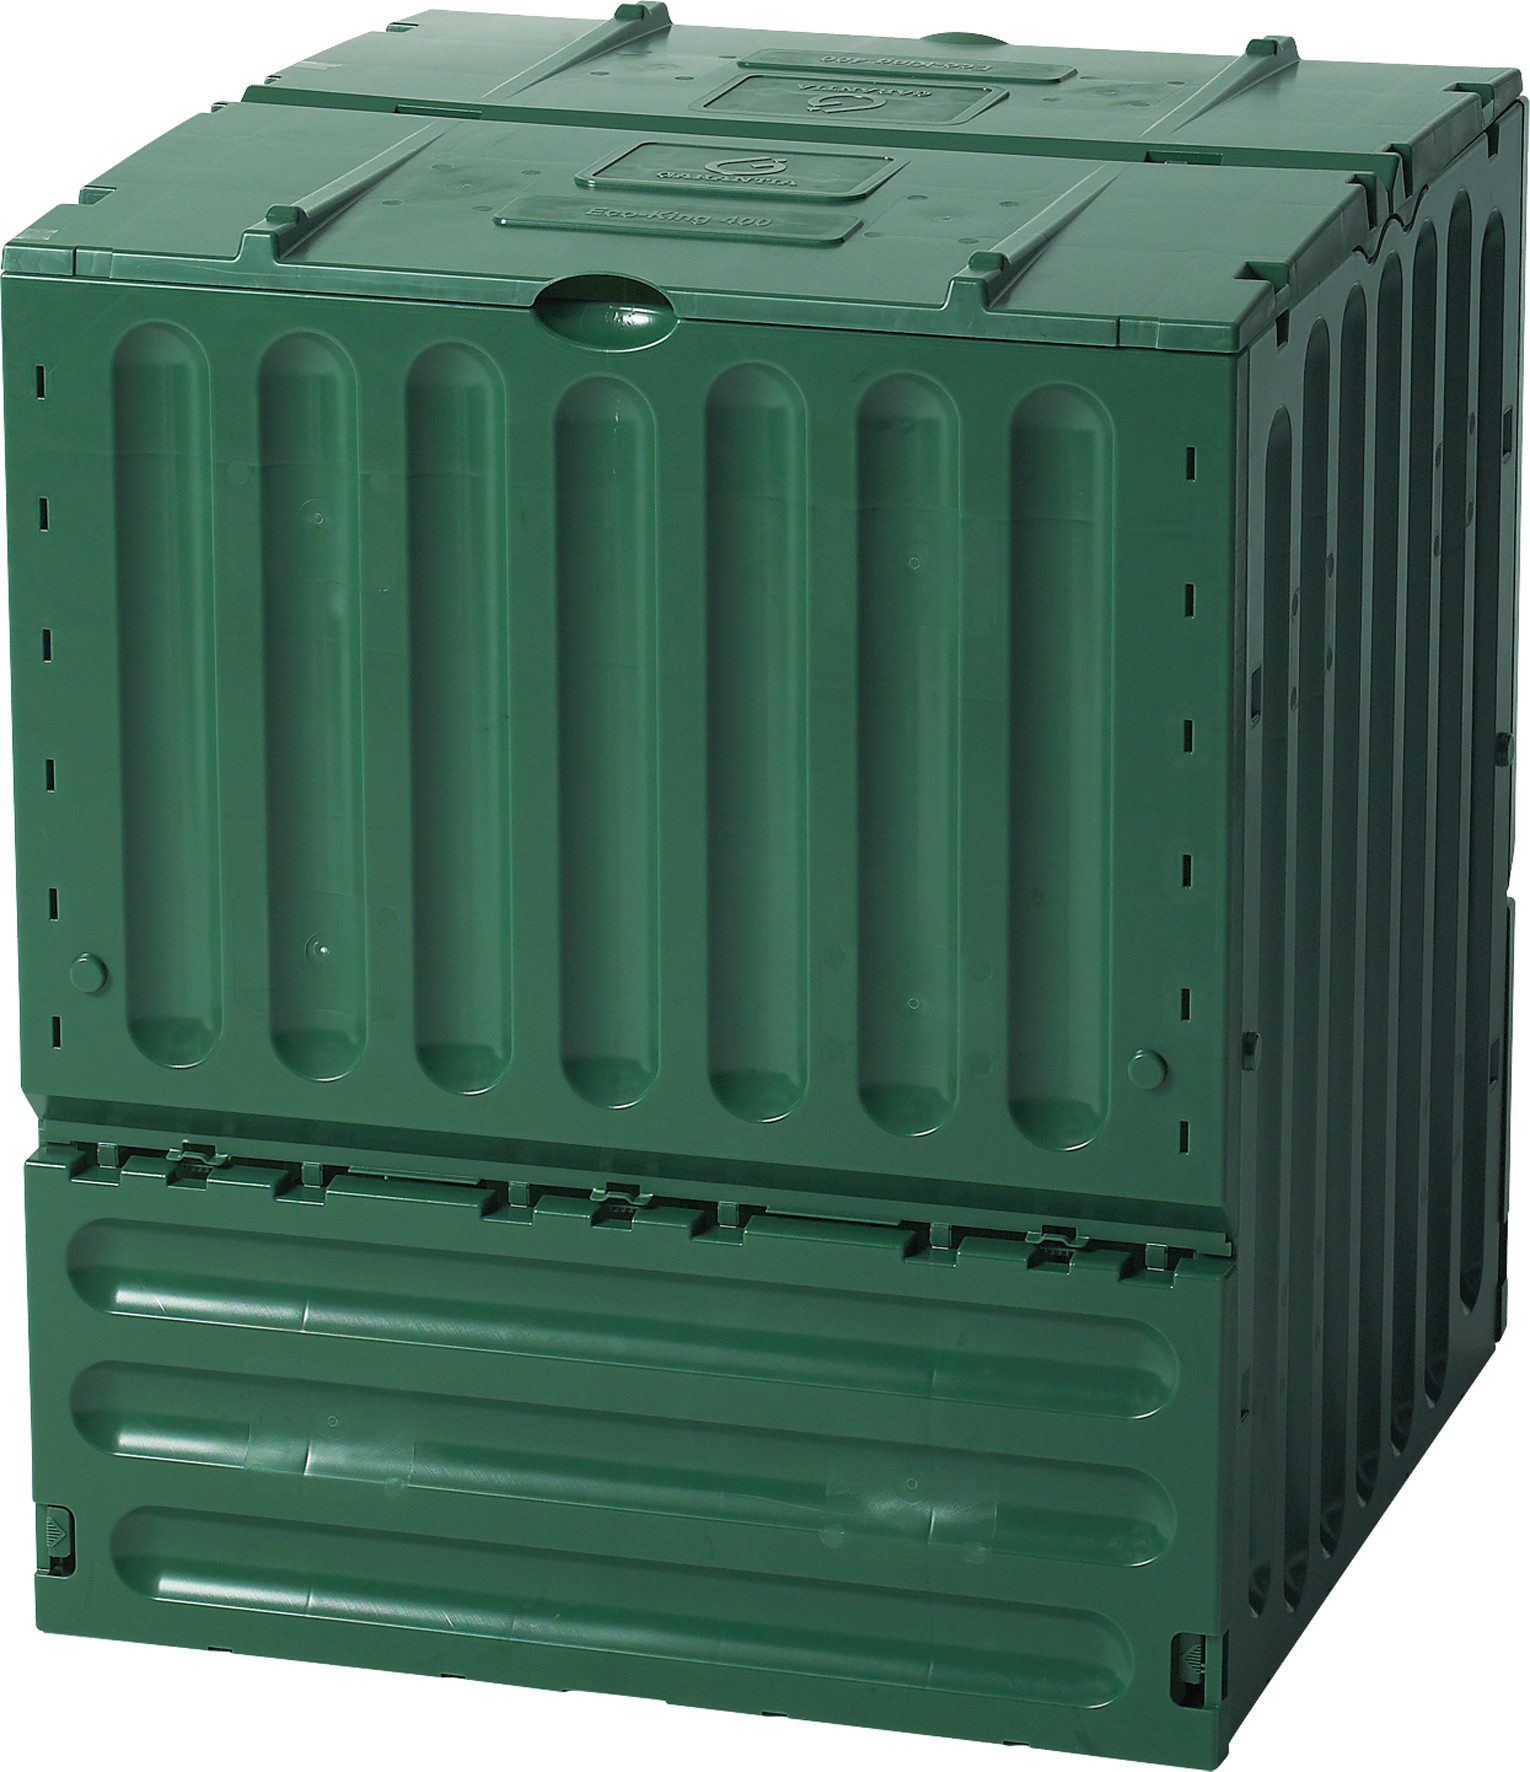 GARANTIA Schnellkomposter ECO-KING Komposter für den Garten in grün, 400 Liter, aus Kunststoff, 400 l, Recyclingkunststoff, 400 l Fassungsvermögen, zwei Einfüllklappen